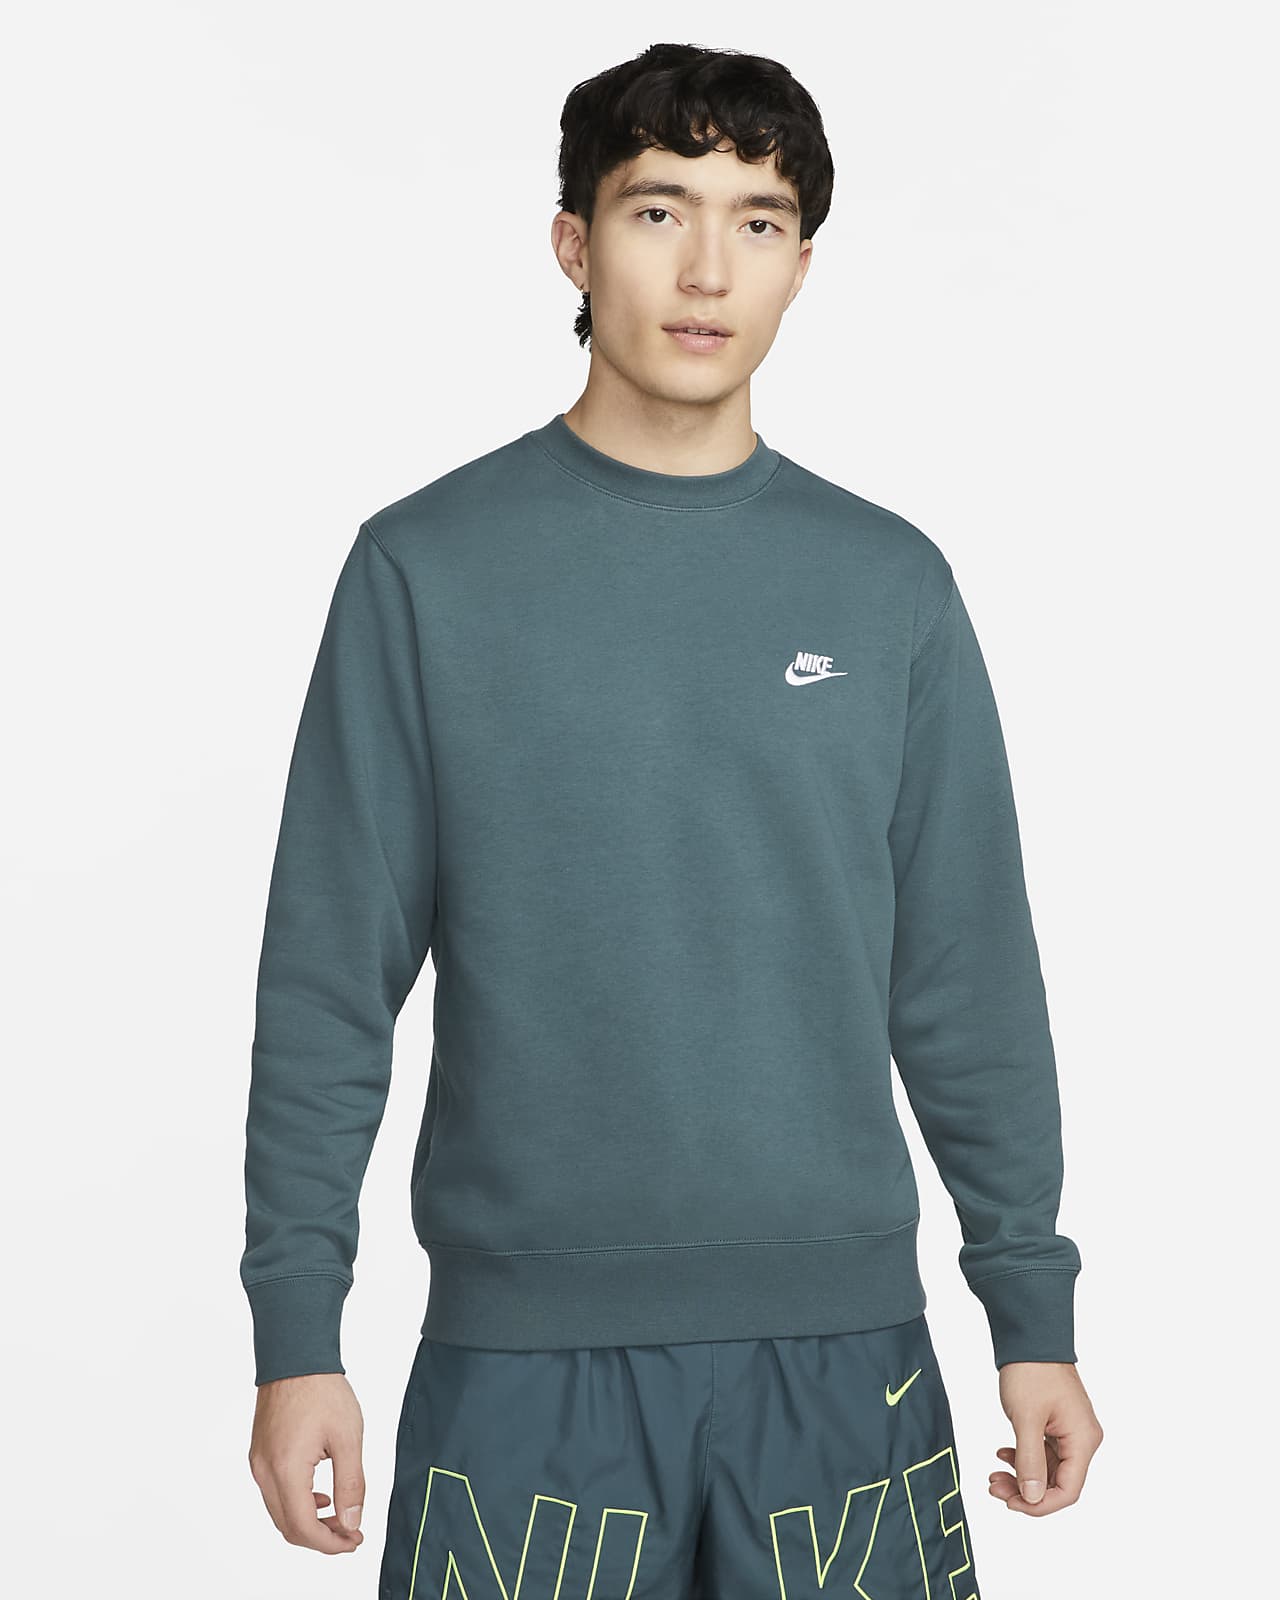 Nike Sportswear Men's Crew-Neck Sweatshirt